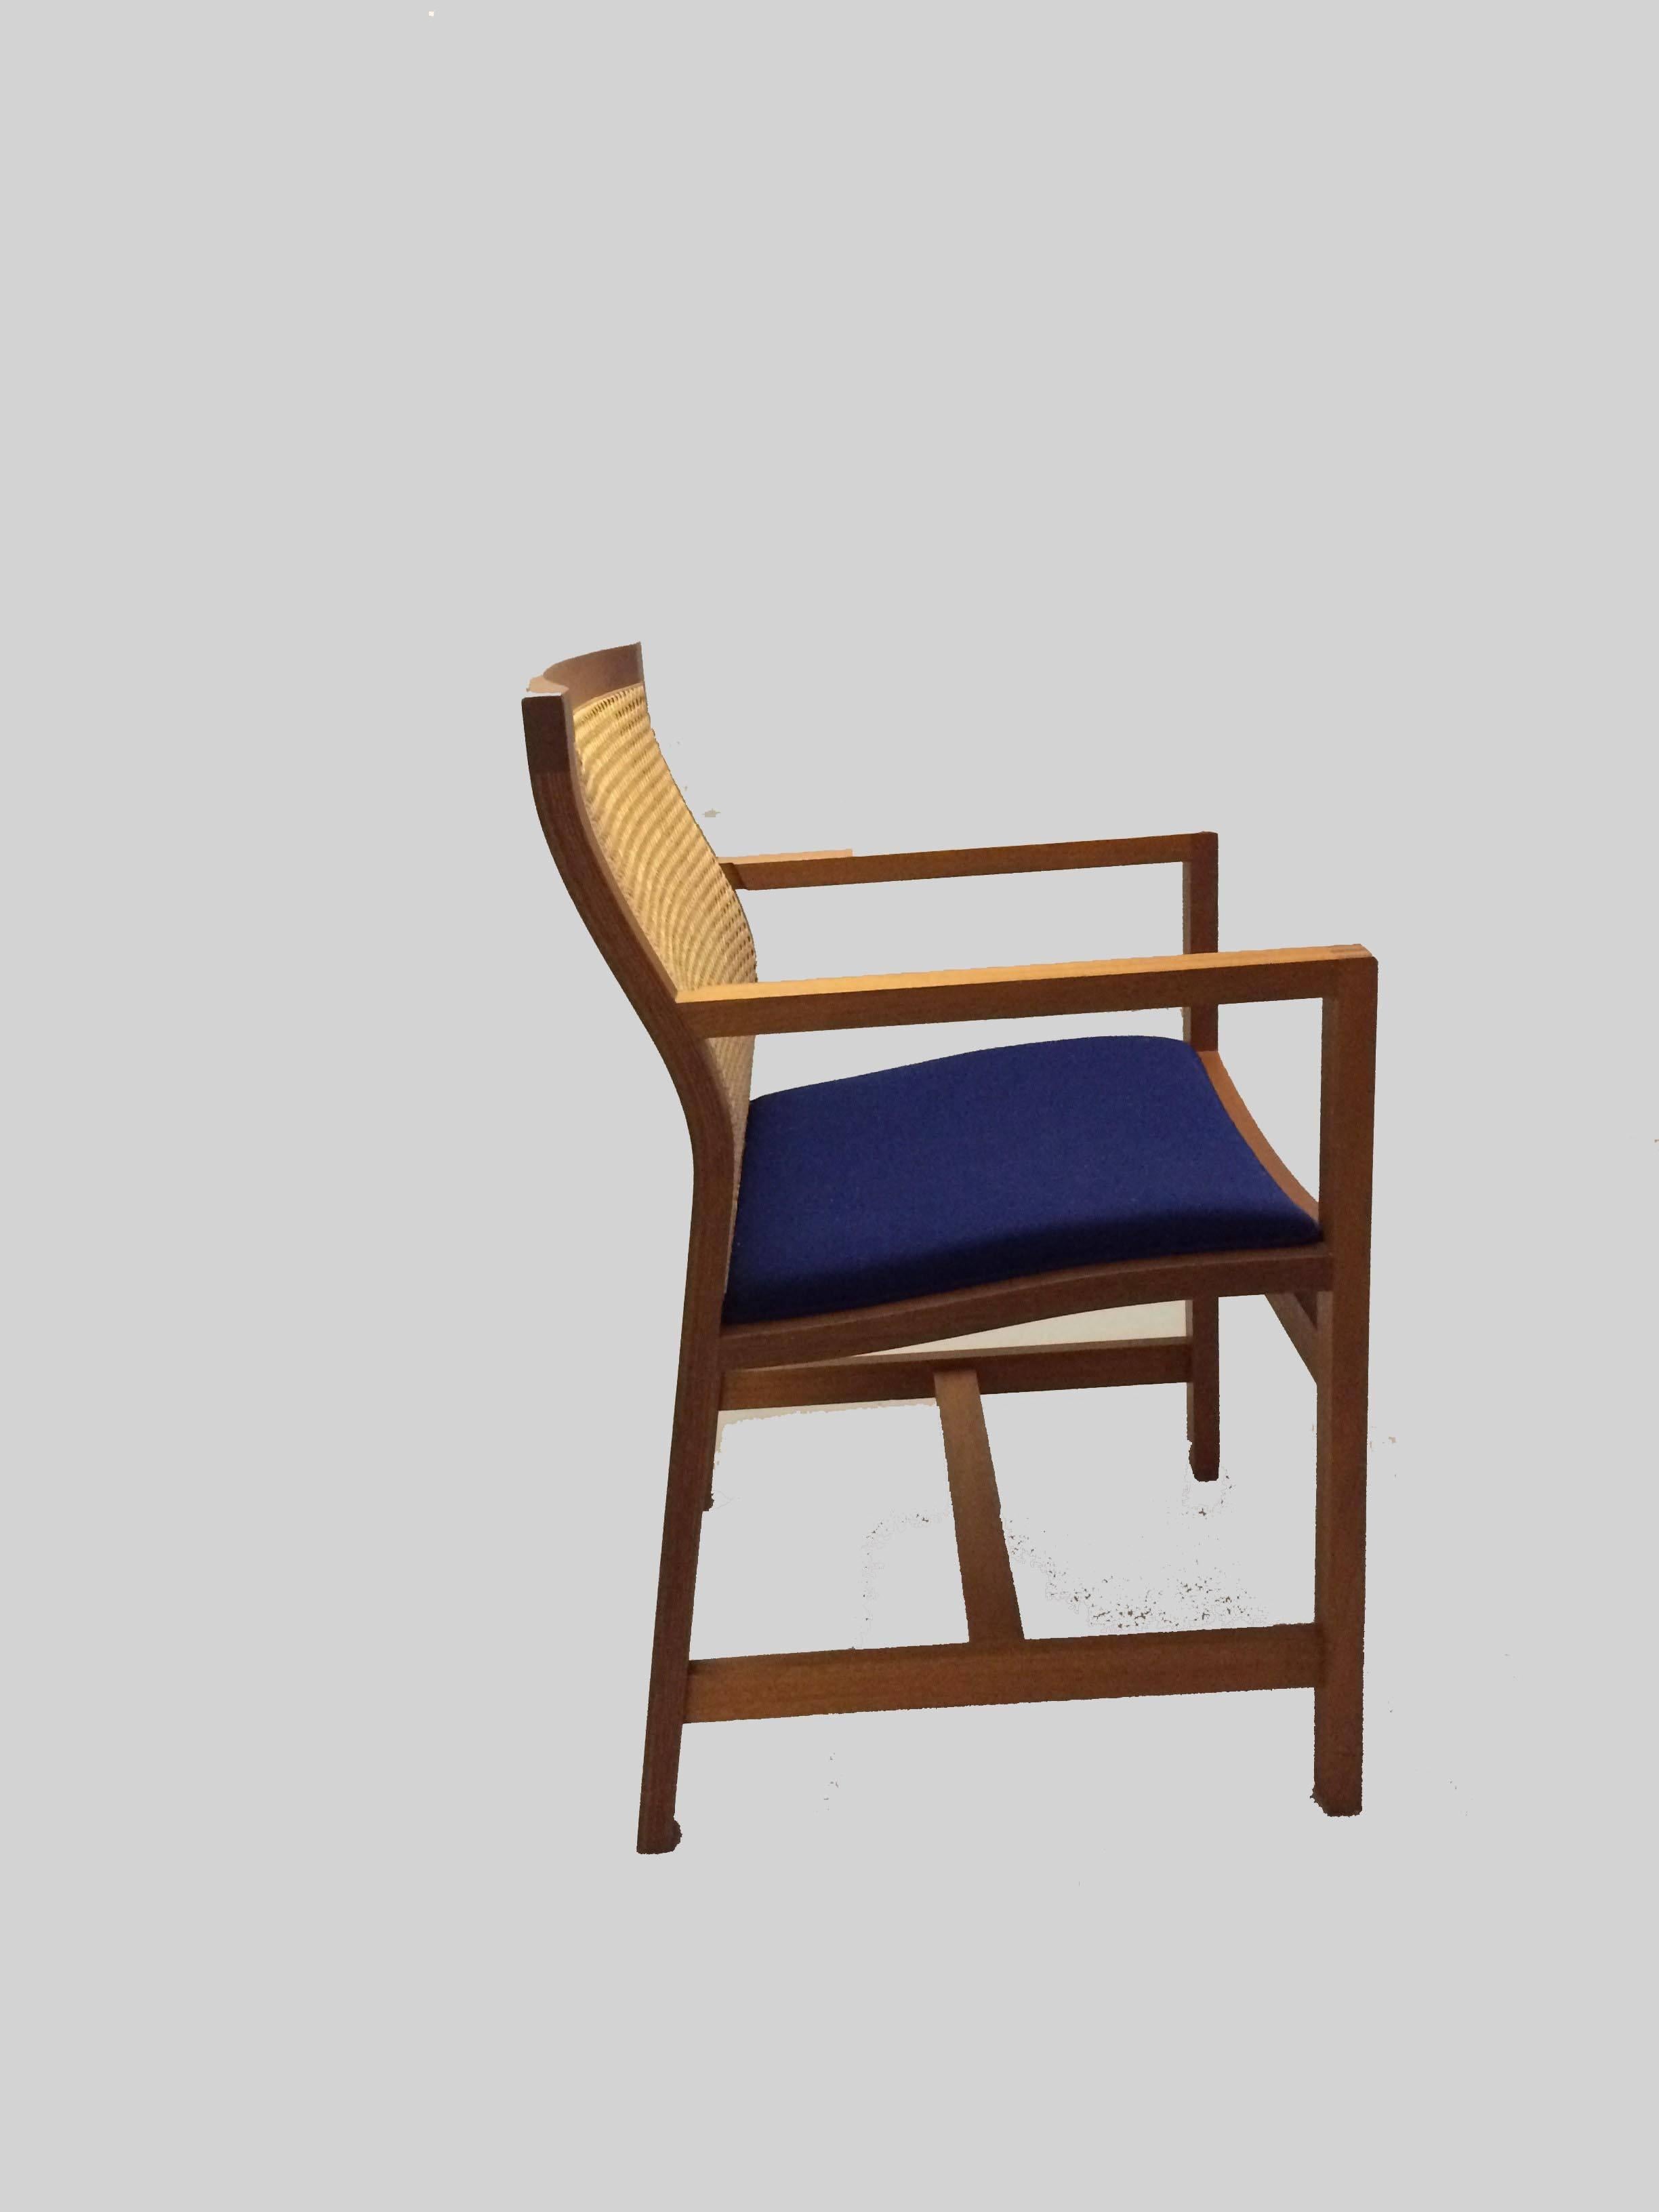 Rud Thygesen und Johnny Sørensen entwarfen 1981 das Modell 7512 für Fredericia Furniture A/S als Teil der Classic Kings Furniture Serie, die seit 1969 entworfen wird und so benannt wurde, weil der dänische König Frederik IX einige der Modelle als